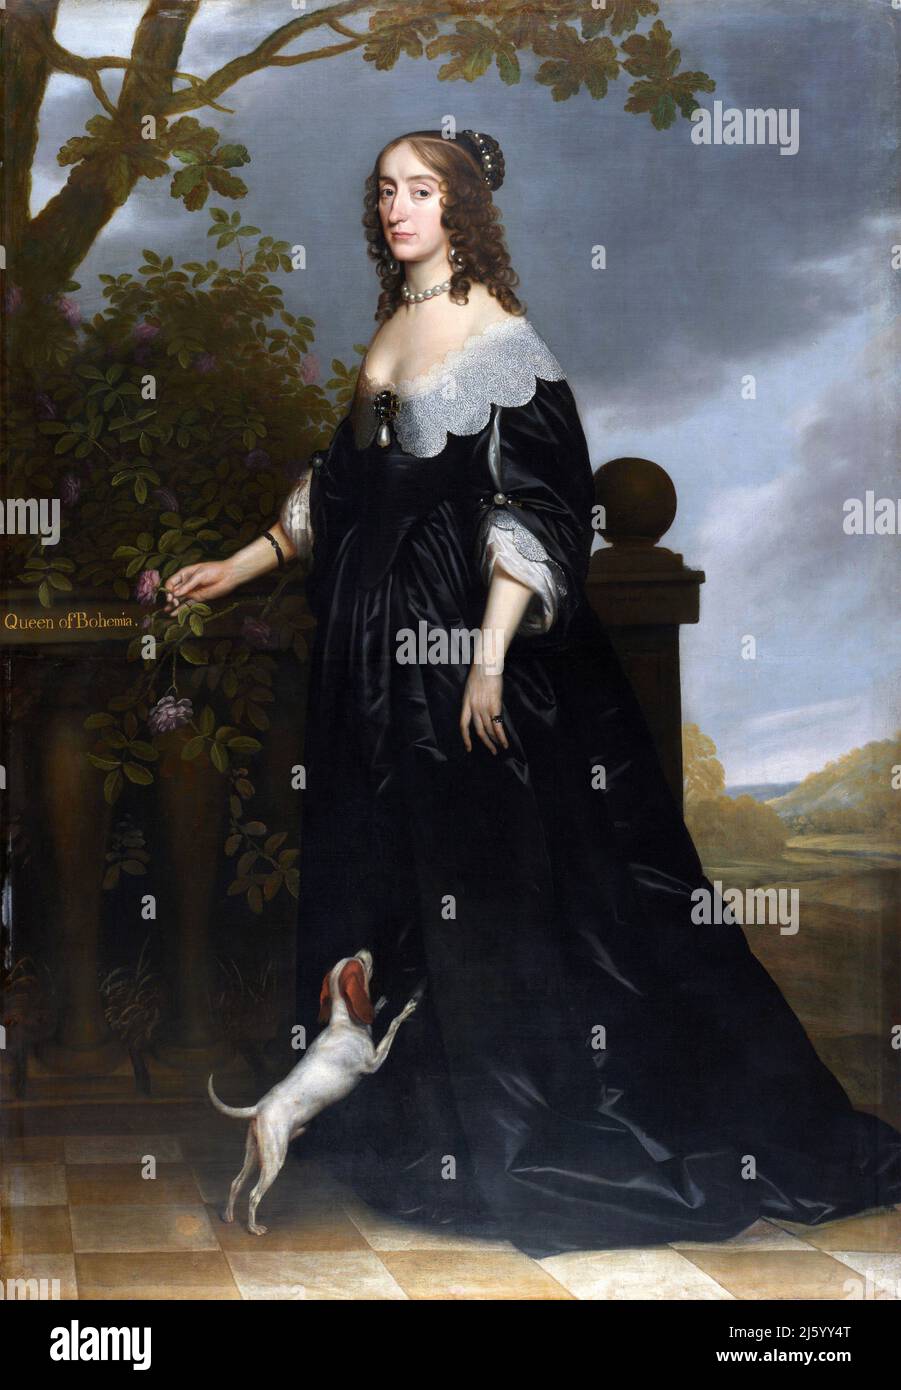 Elisabetta Regina di Boemia, ritratto del pittore olandese dell'età dell'oro Gerrit van Honthorst (1592-1656), olio su tela, 1642. Elisabetta era la moglie di Federico V, Elettore Palatino e spesso chiamata Regina d'Inverno. Era la seconda figlia e figlia maggiore di re Giacomo VI e io di Scozia, Inghilterra e Irlanda. Foto Stock